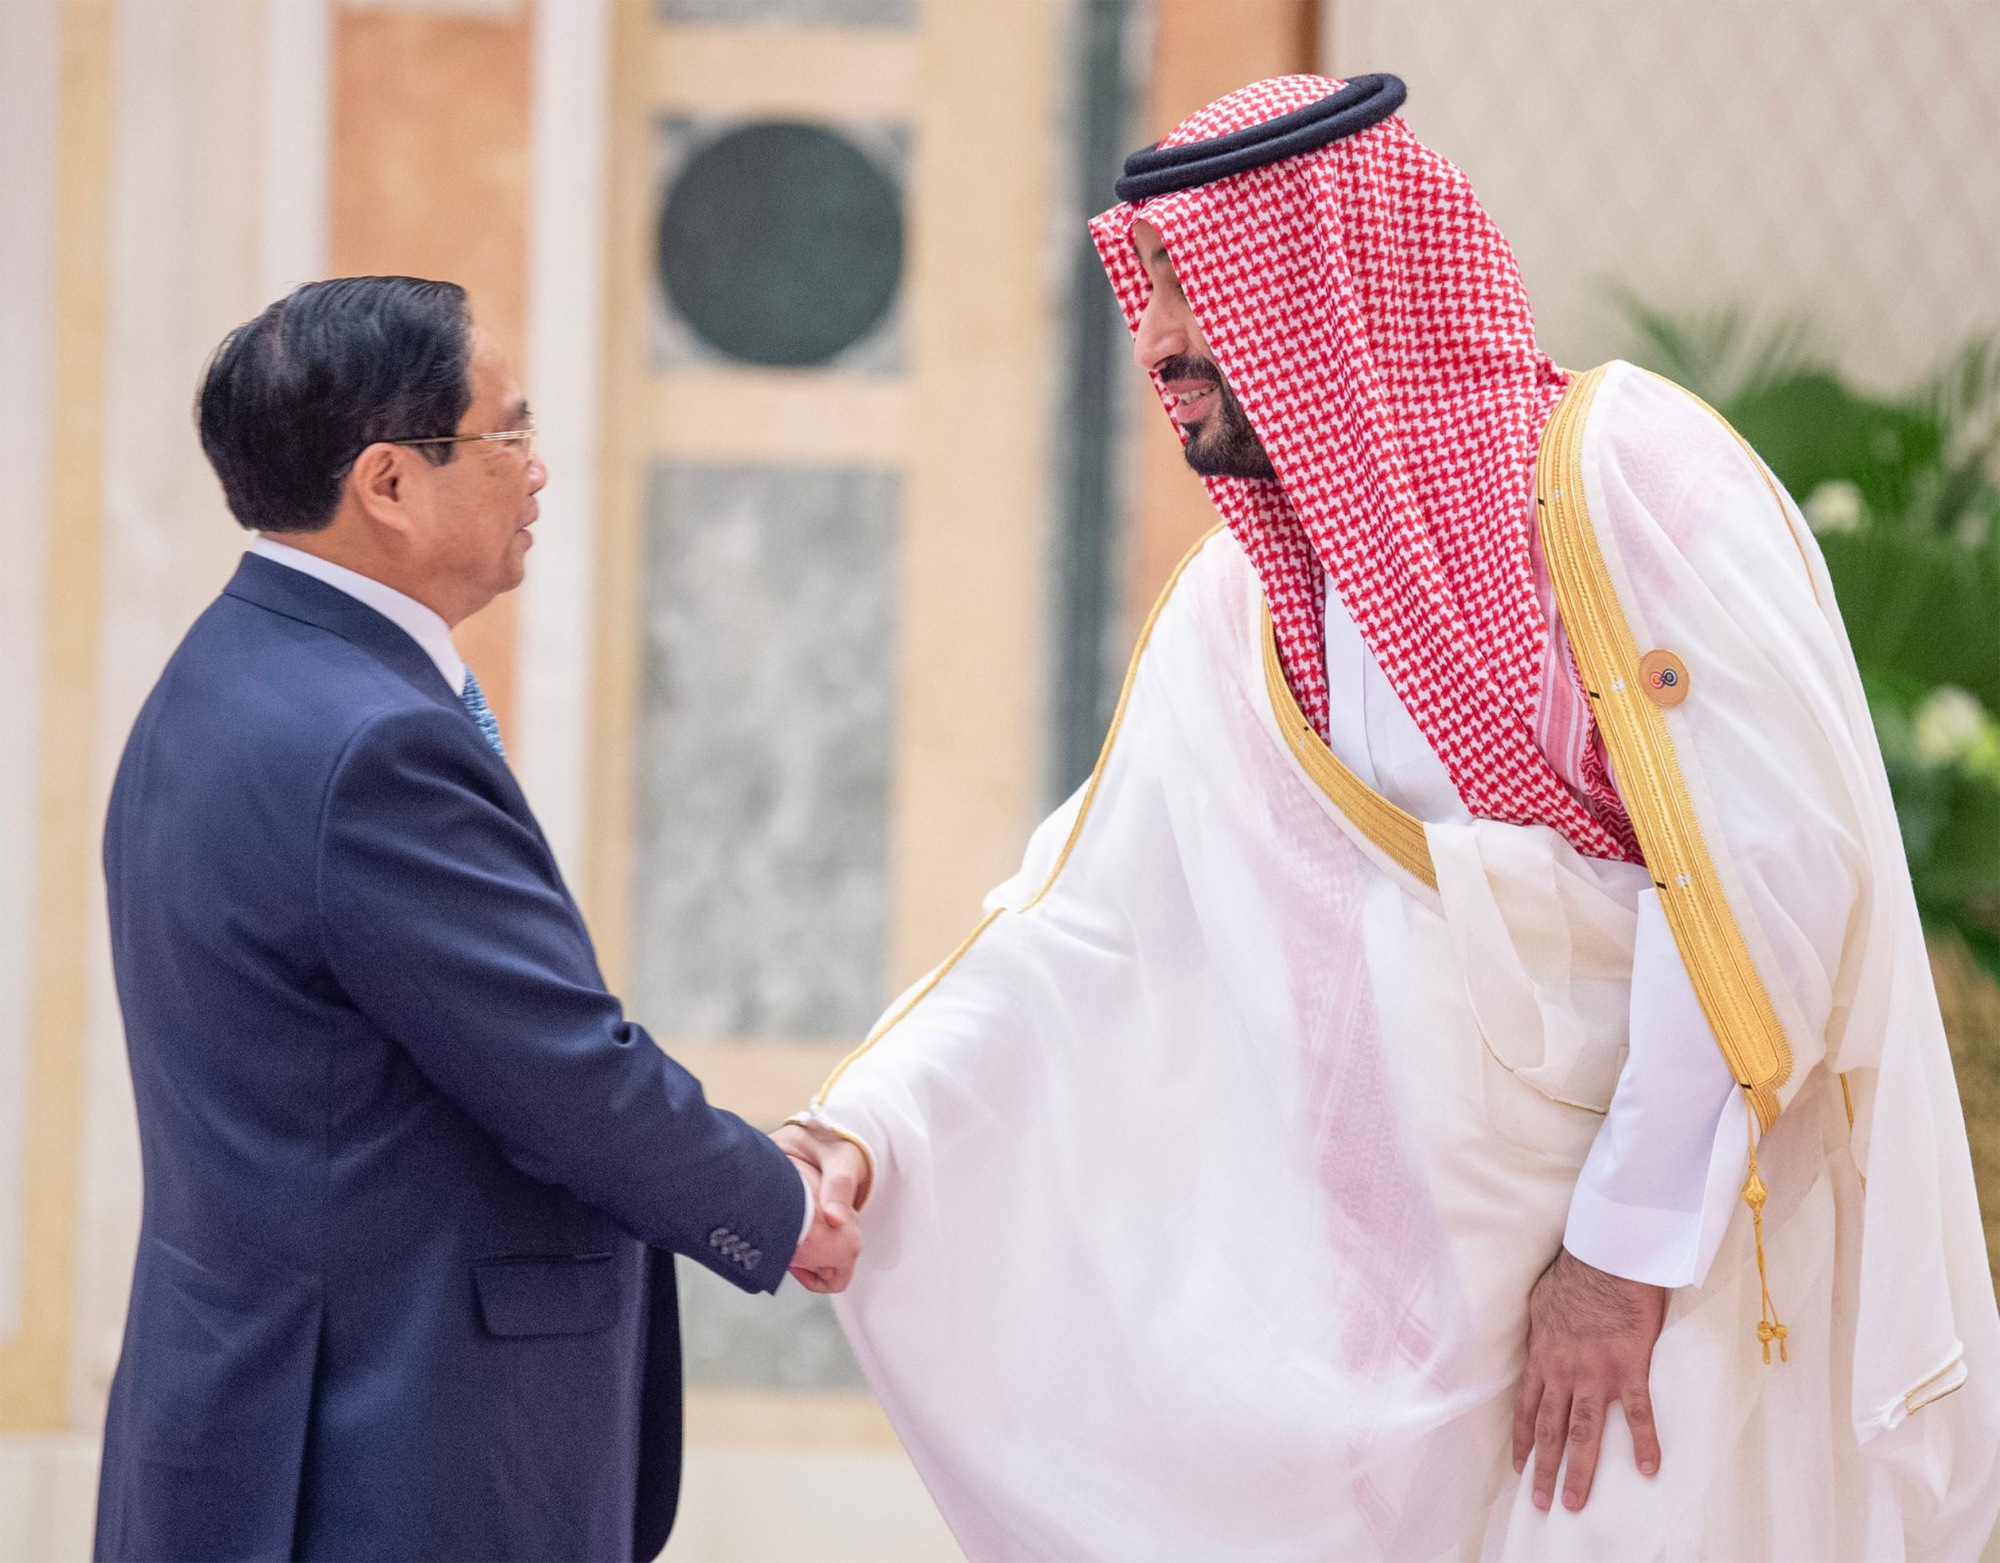 Thủ tướng Chính phủ Phạm Minh Chính và Hoàng Thái tử, Thủ tướng Saudi Arabia Mohammad bin Salman Al Saud - Ảnh: VGP/Nhật Bắc